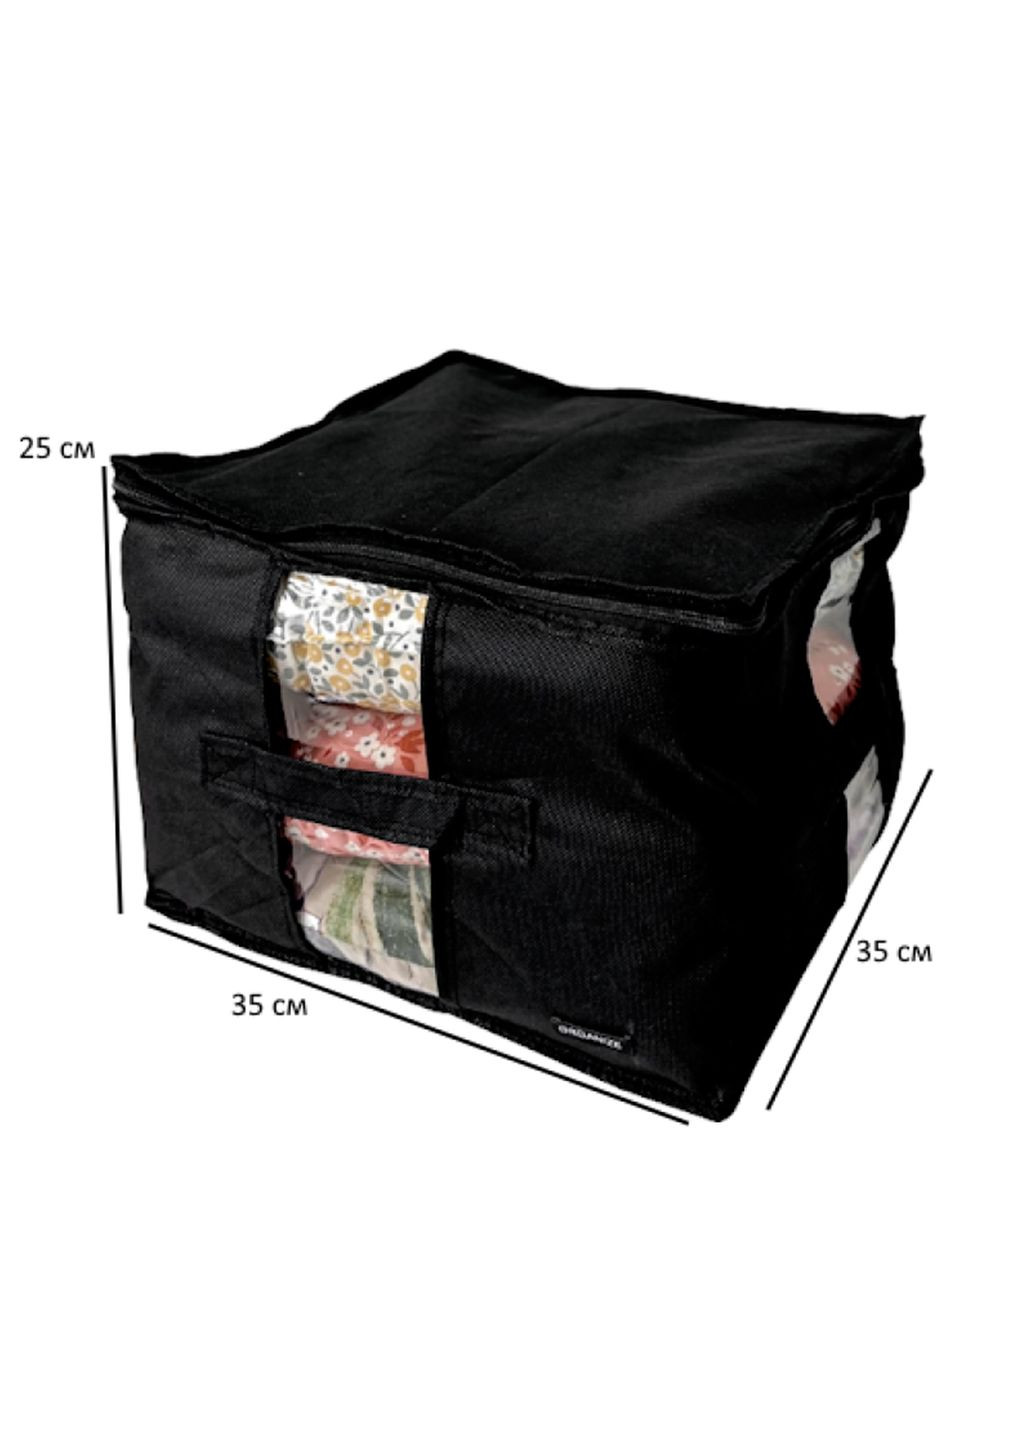 Органайзер-сумка текстильный для хранения вещей, одежды, домашнего текстиля XL 35х25х25 см на молнии Organize (291018691)